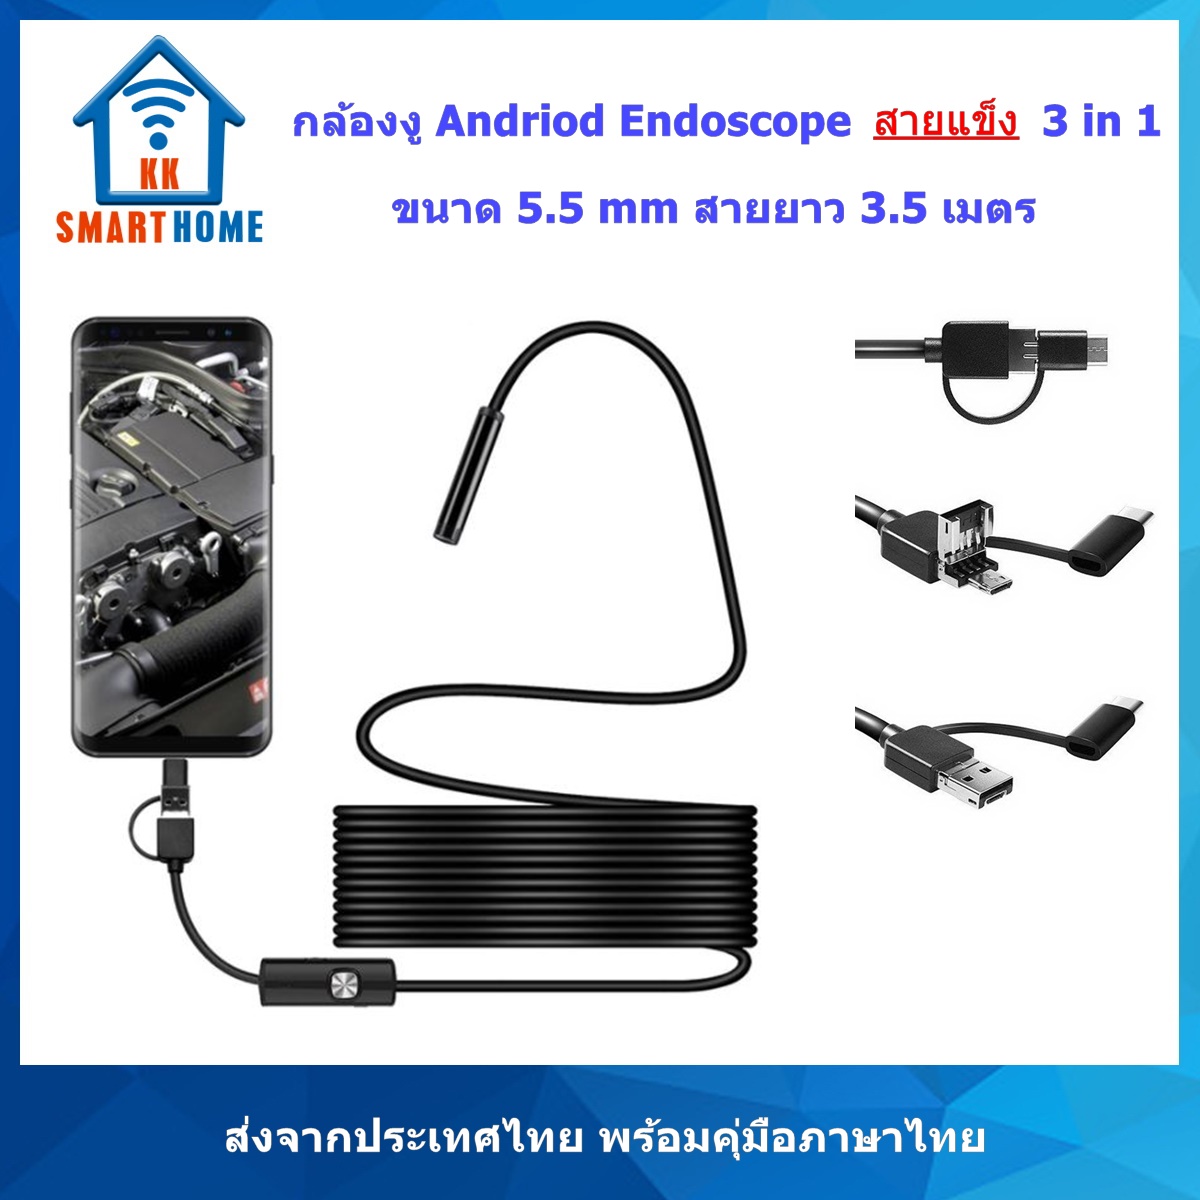 กล้องงู Android Endoscopic รุ่นสายแข็ง สายยาว 3.5 ม. 640x480 ใช้กับ Android ที่รองรับ USB2.0 OTG เท่านั้น